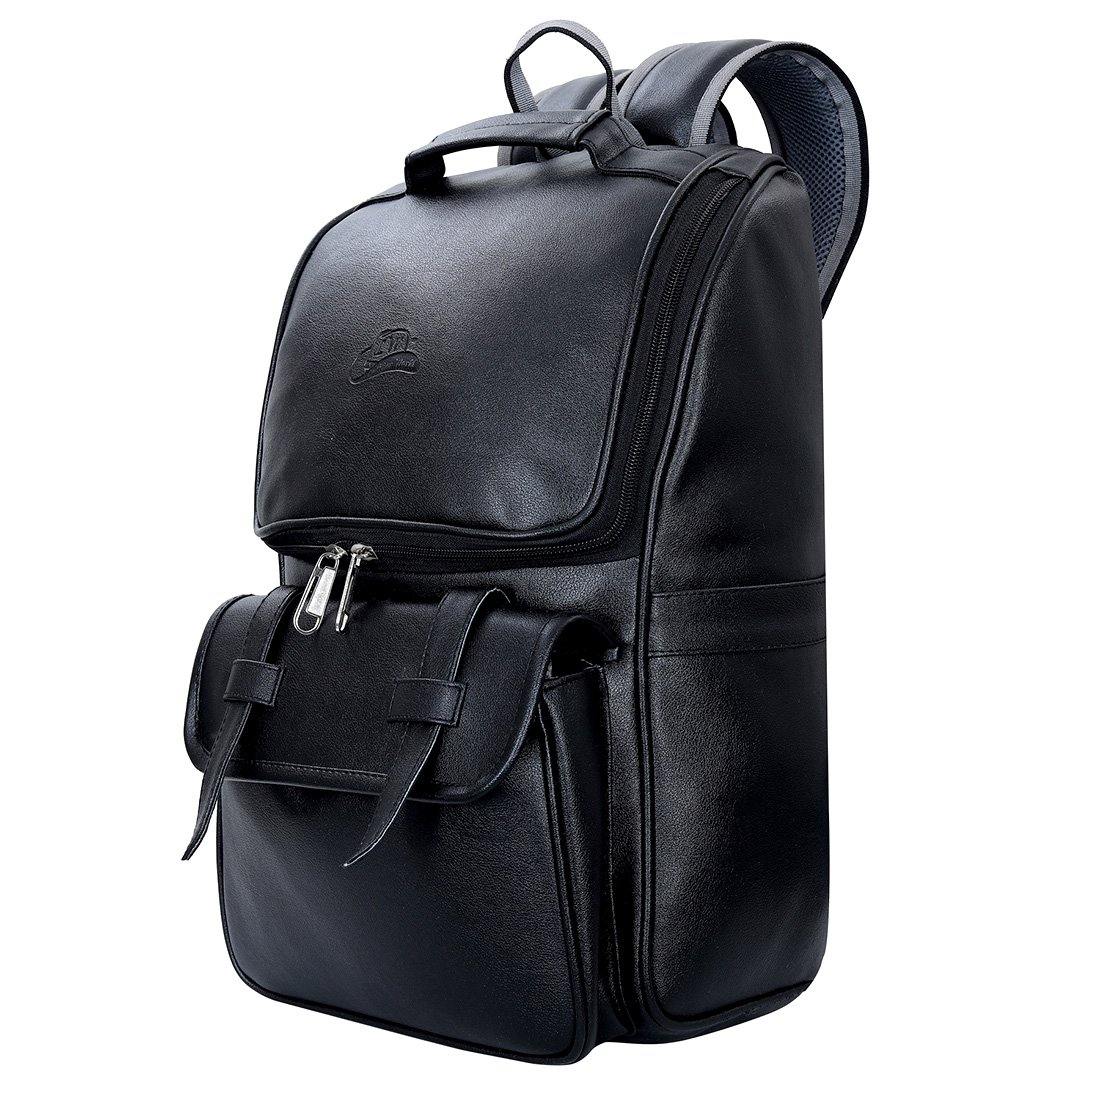 Leather World Premium Leatherette Unisex Backpack - Leatherworldonline.net